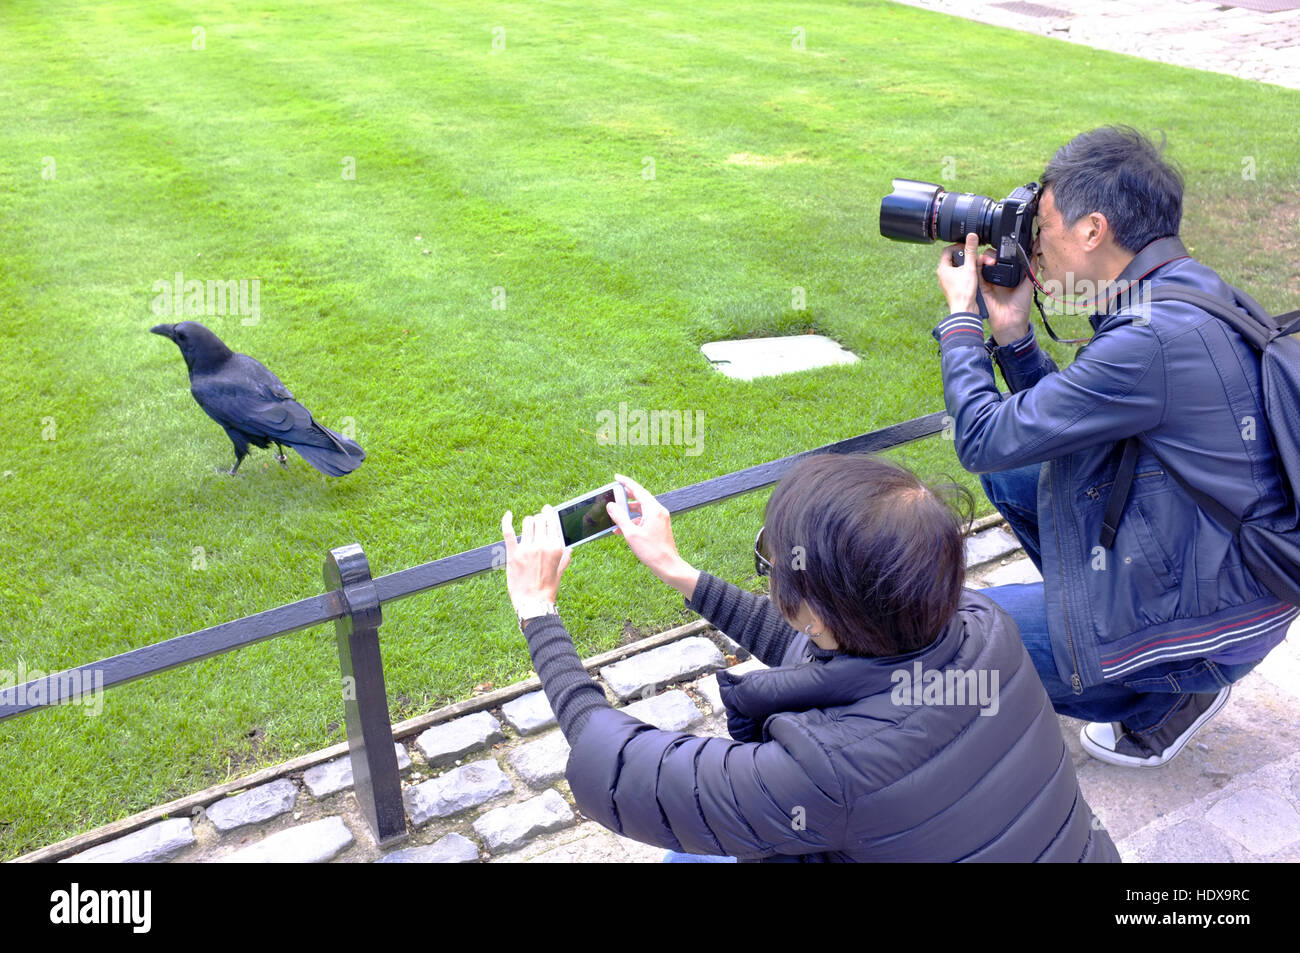 Les touristes photographier un corbeau à la Tour de Londres Banque D'Images